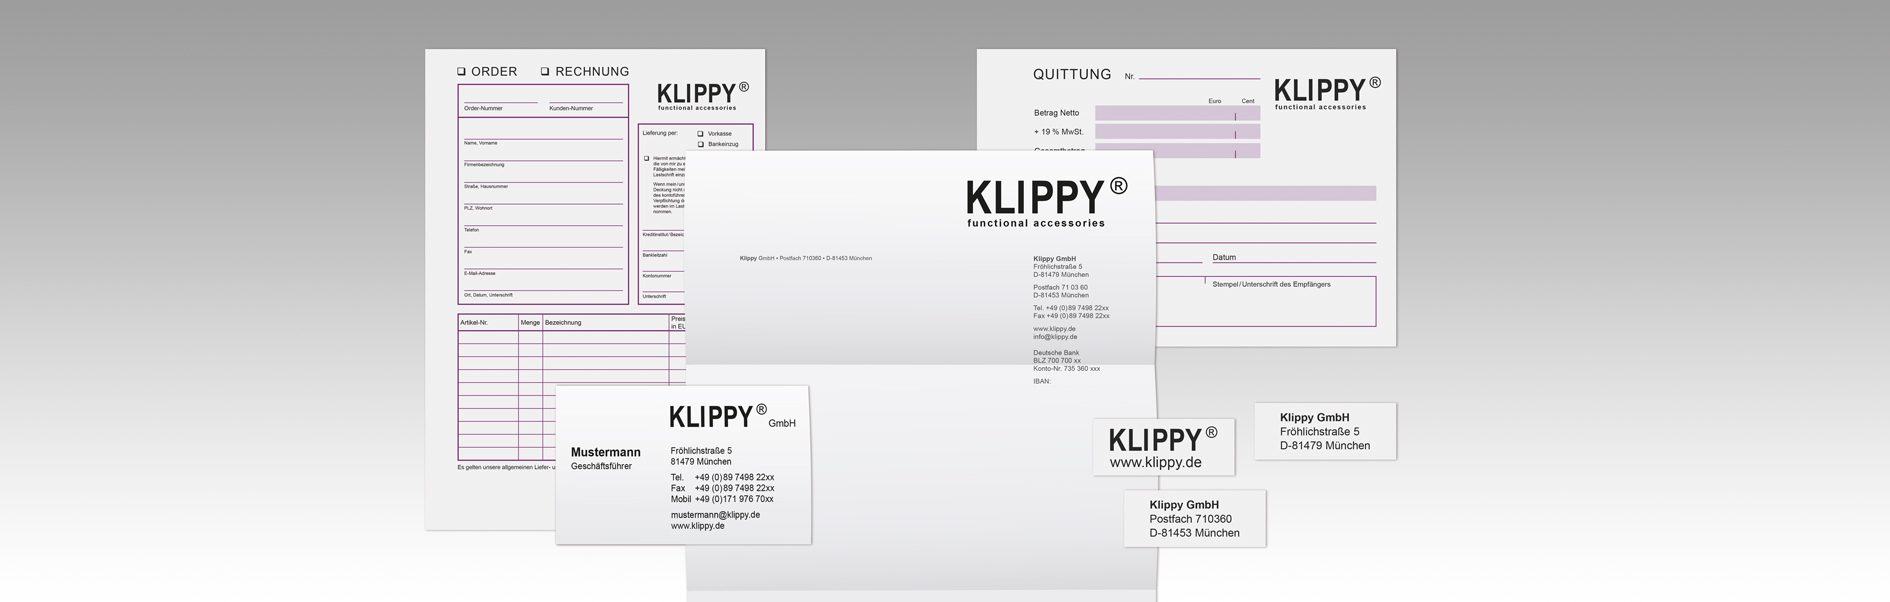 Hier ist die Geschäftsausstattung von Klippy dargestellt.